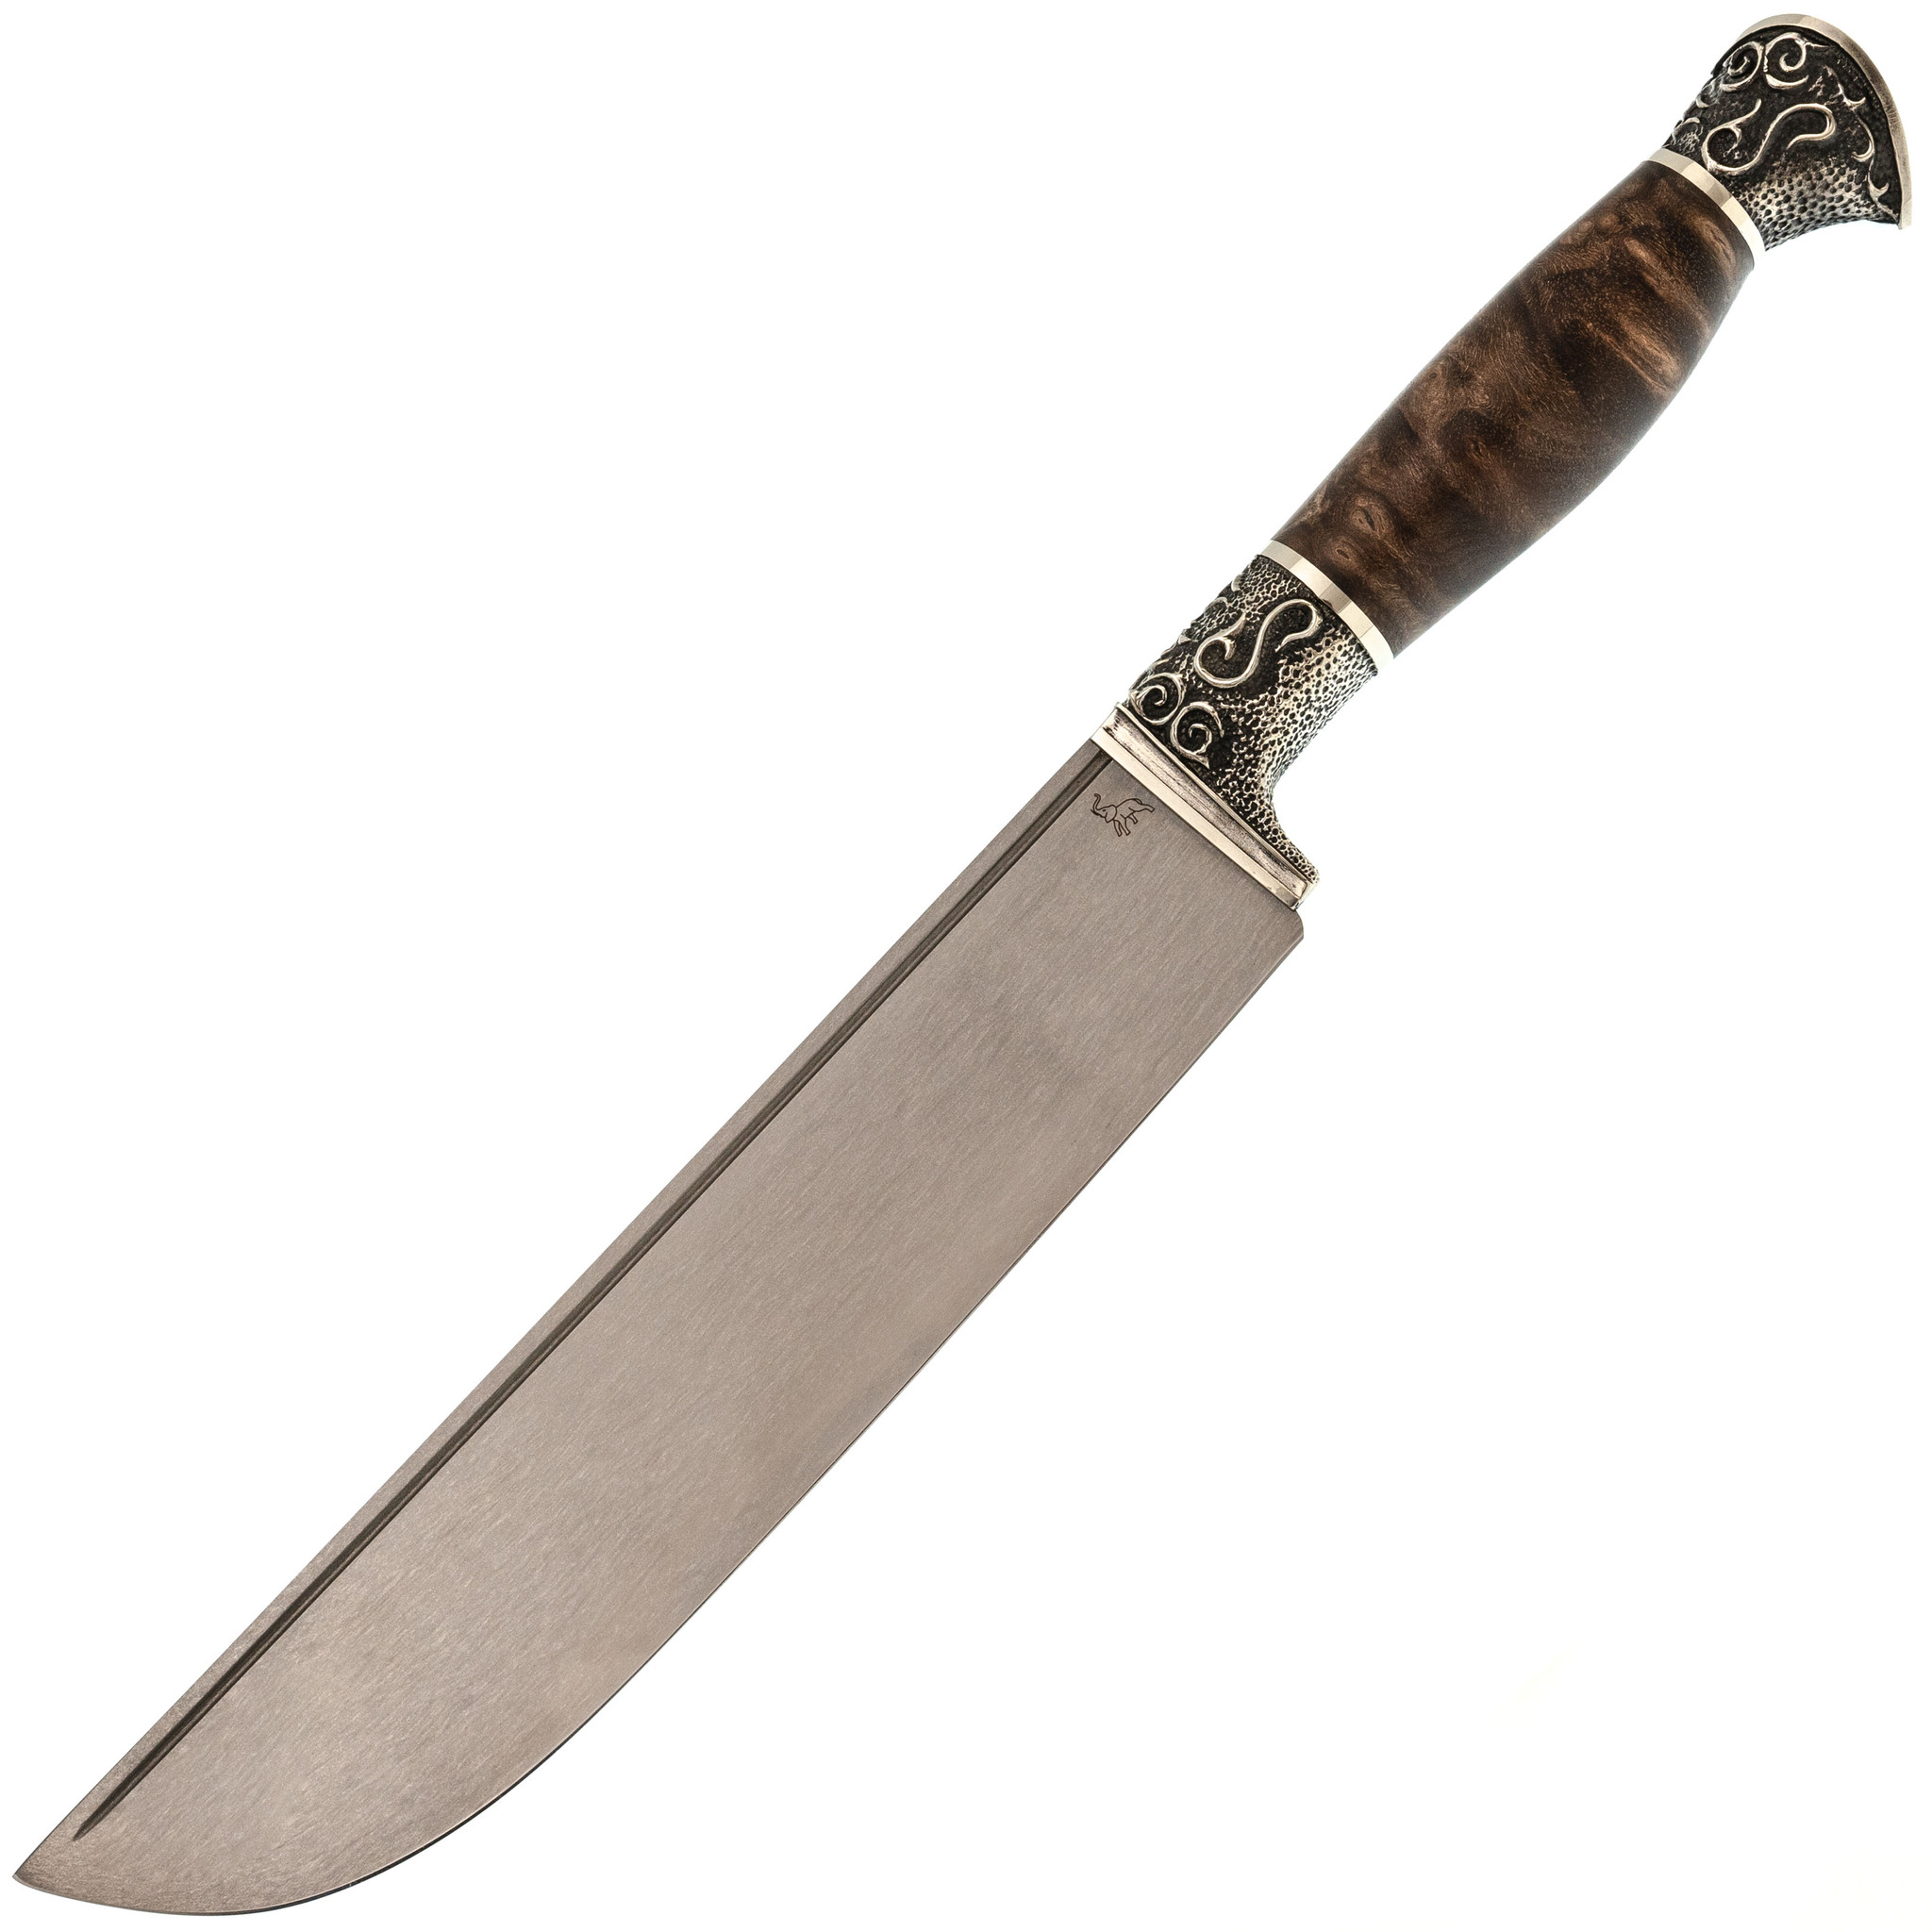 Туристический Корд С14, сталь Х12МФ, рукоять орех туристический нож caspian aus 8 sw орех кизляр